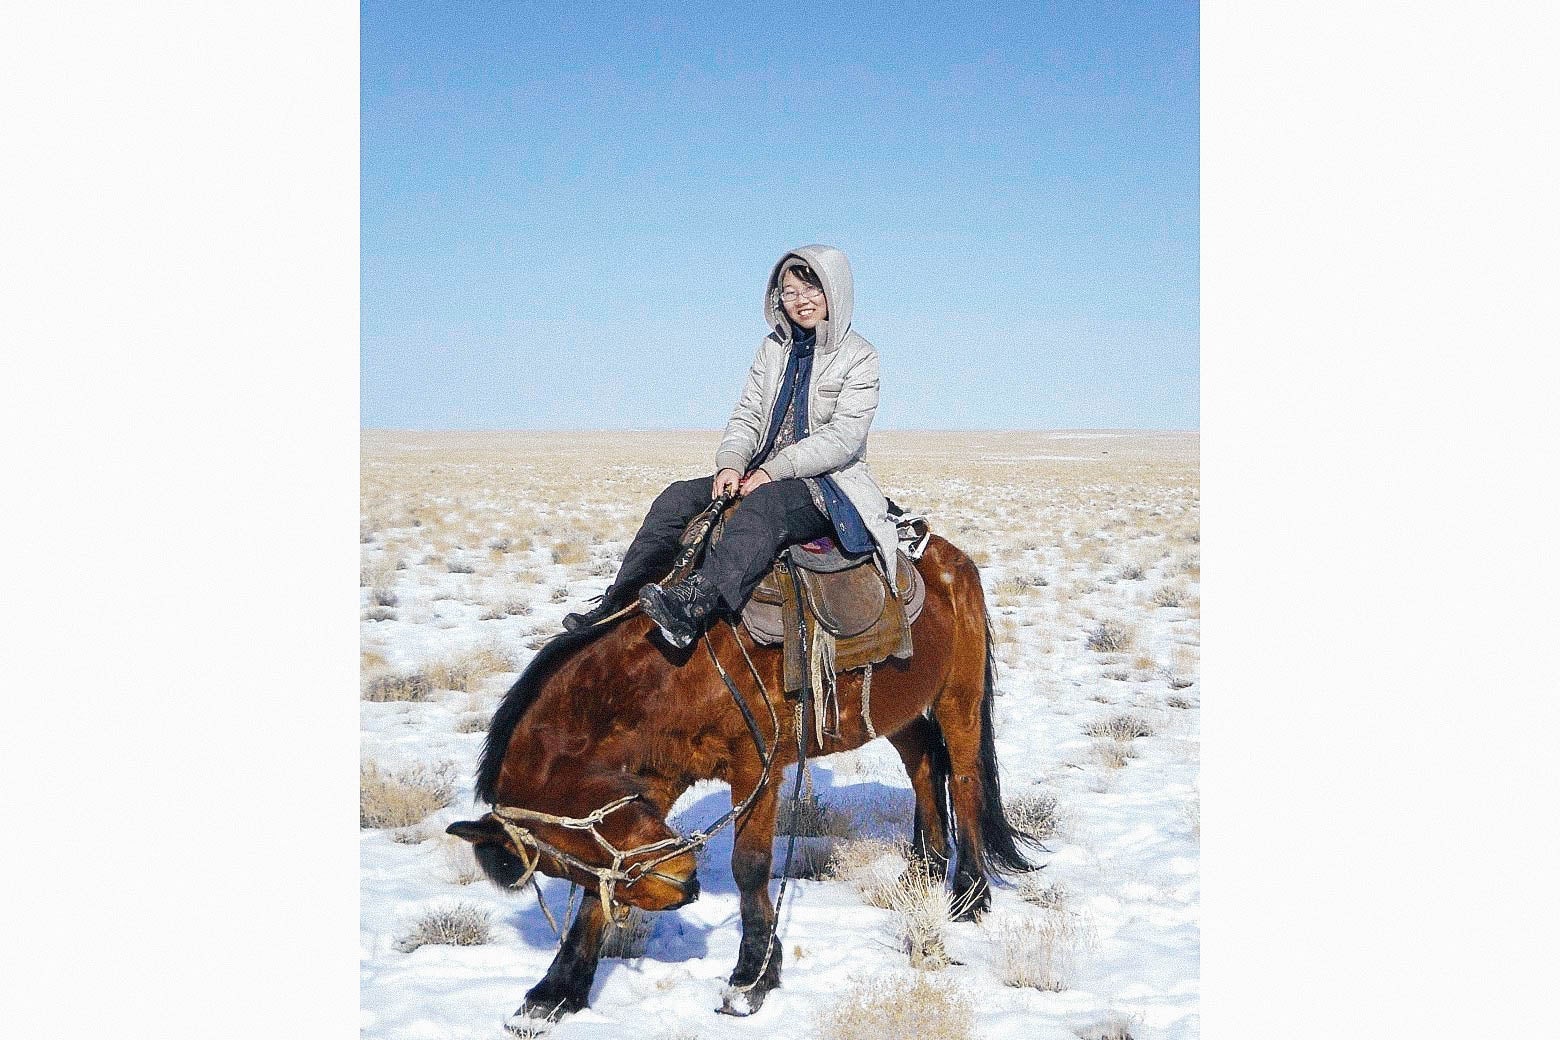 Li Juan on a horse in the snow-covered desert.